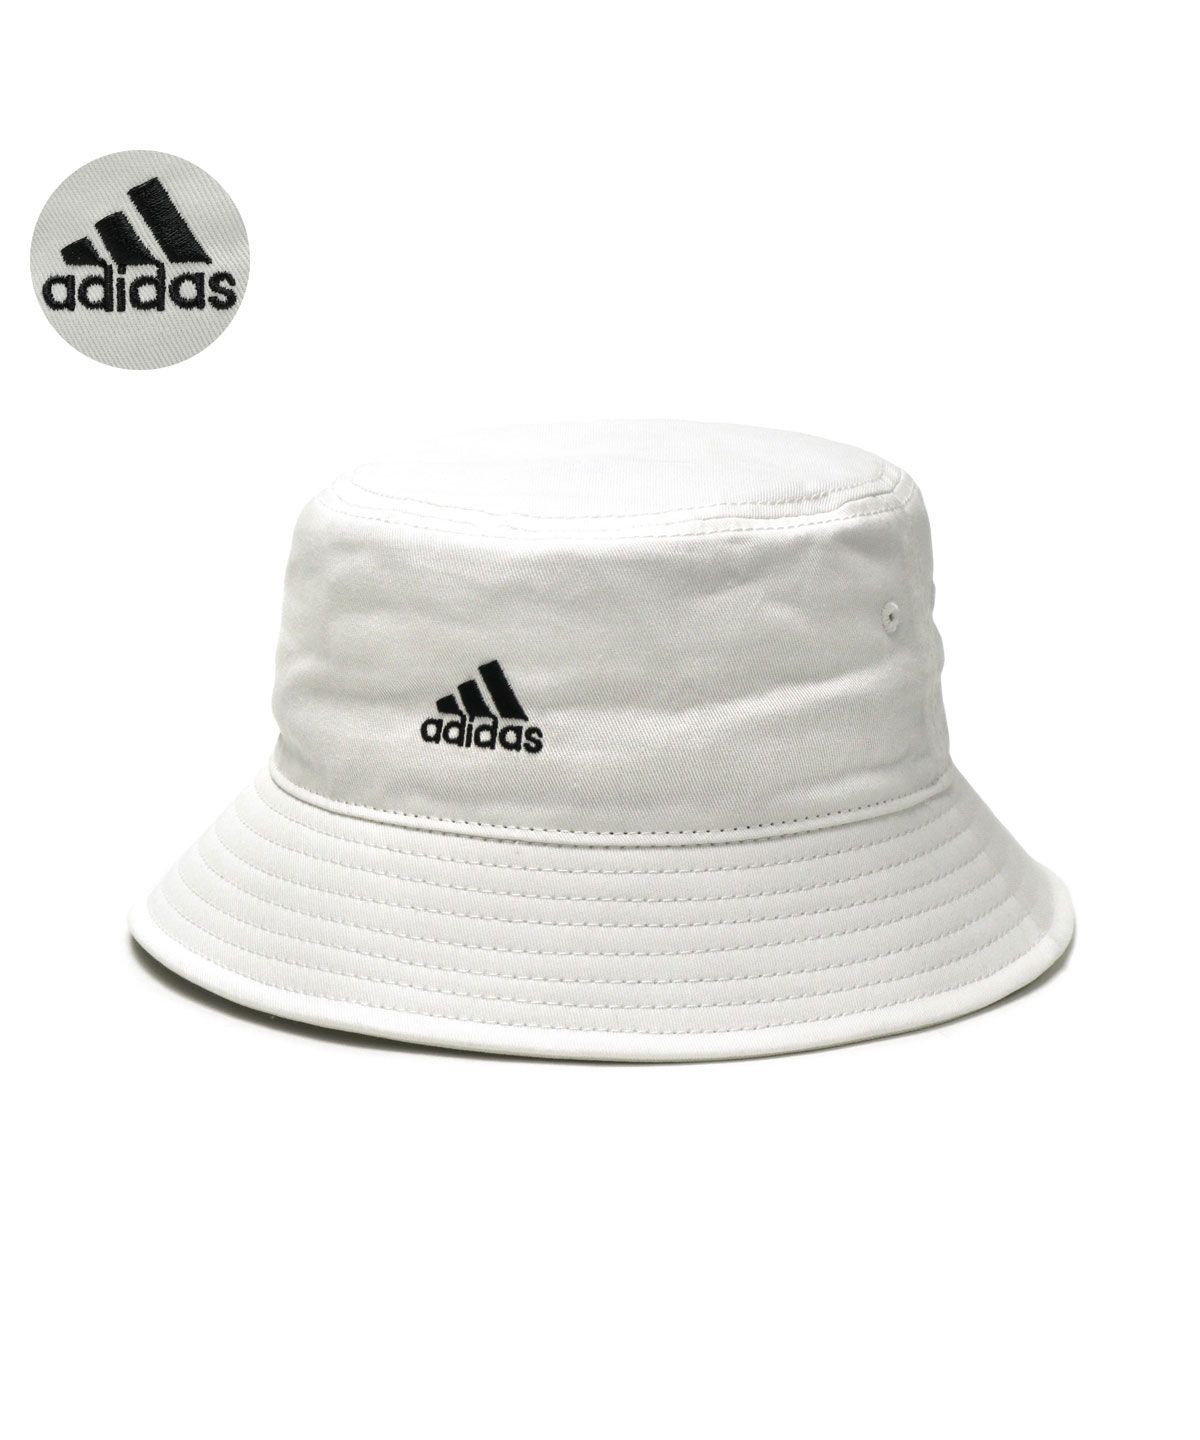 アディダス バケットハット adidas ADS BOS CT BUCKET HAT 帽子 バケハ ロゴ 刺繍 綿 コットン 117－111701